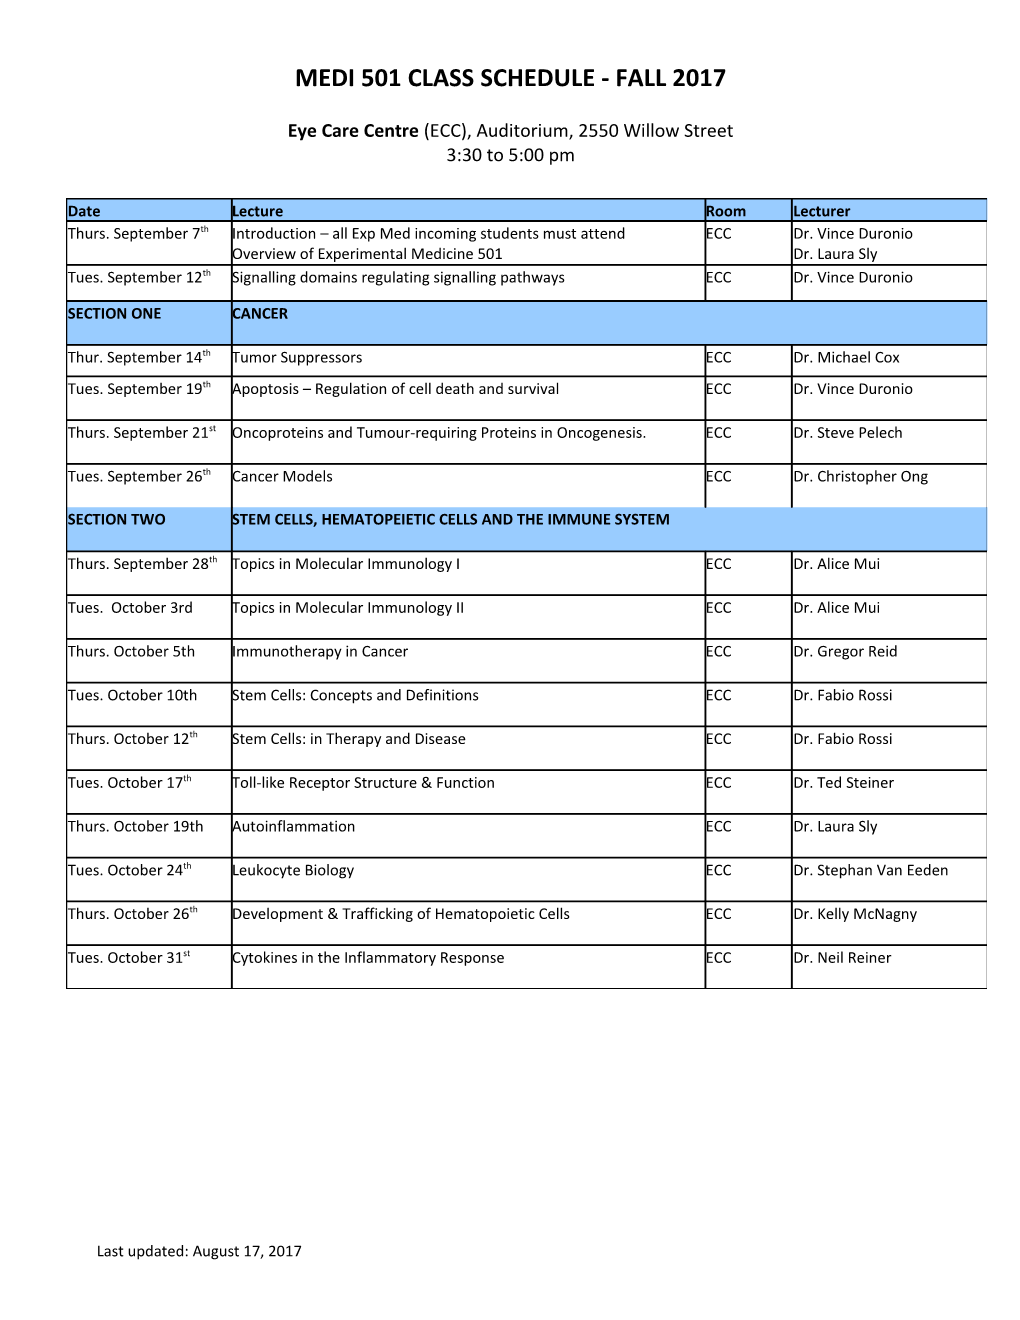 MEDI 501 Class Schedule